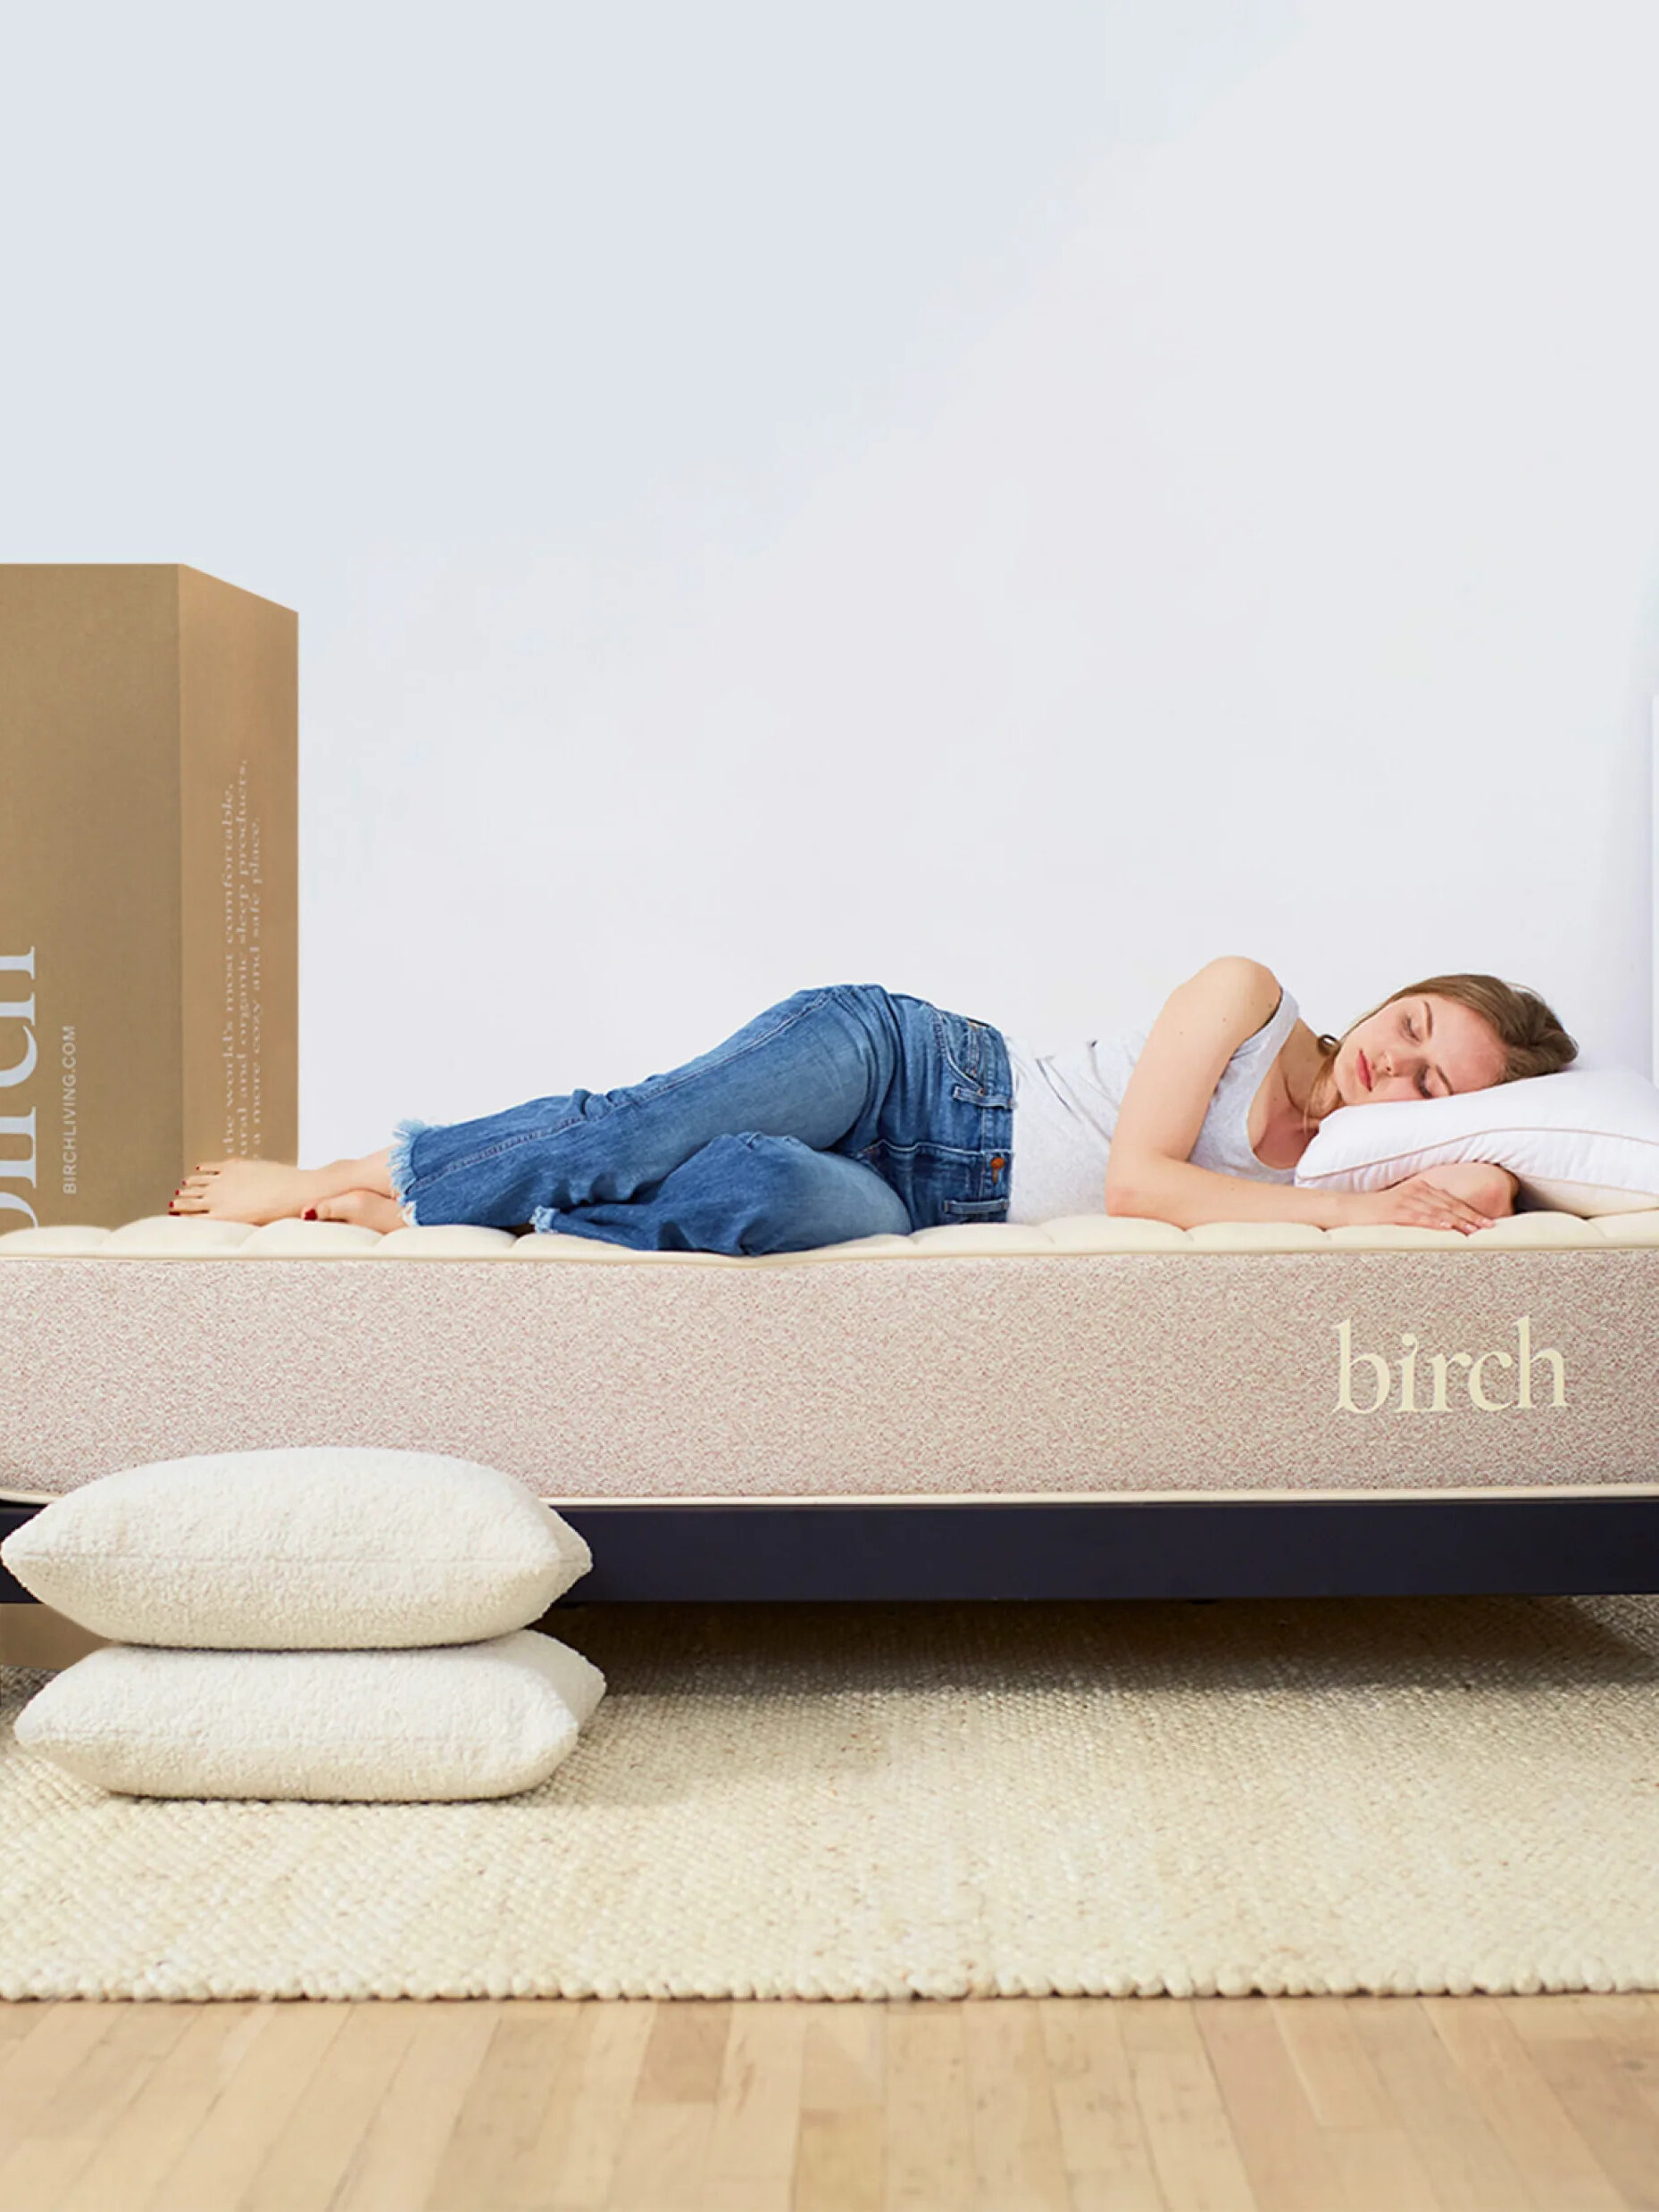 A woman lies on her Birch natural latex mattress